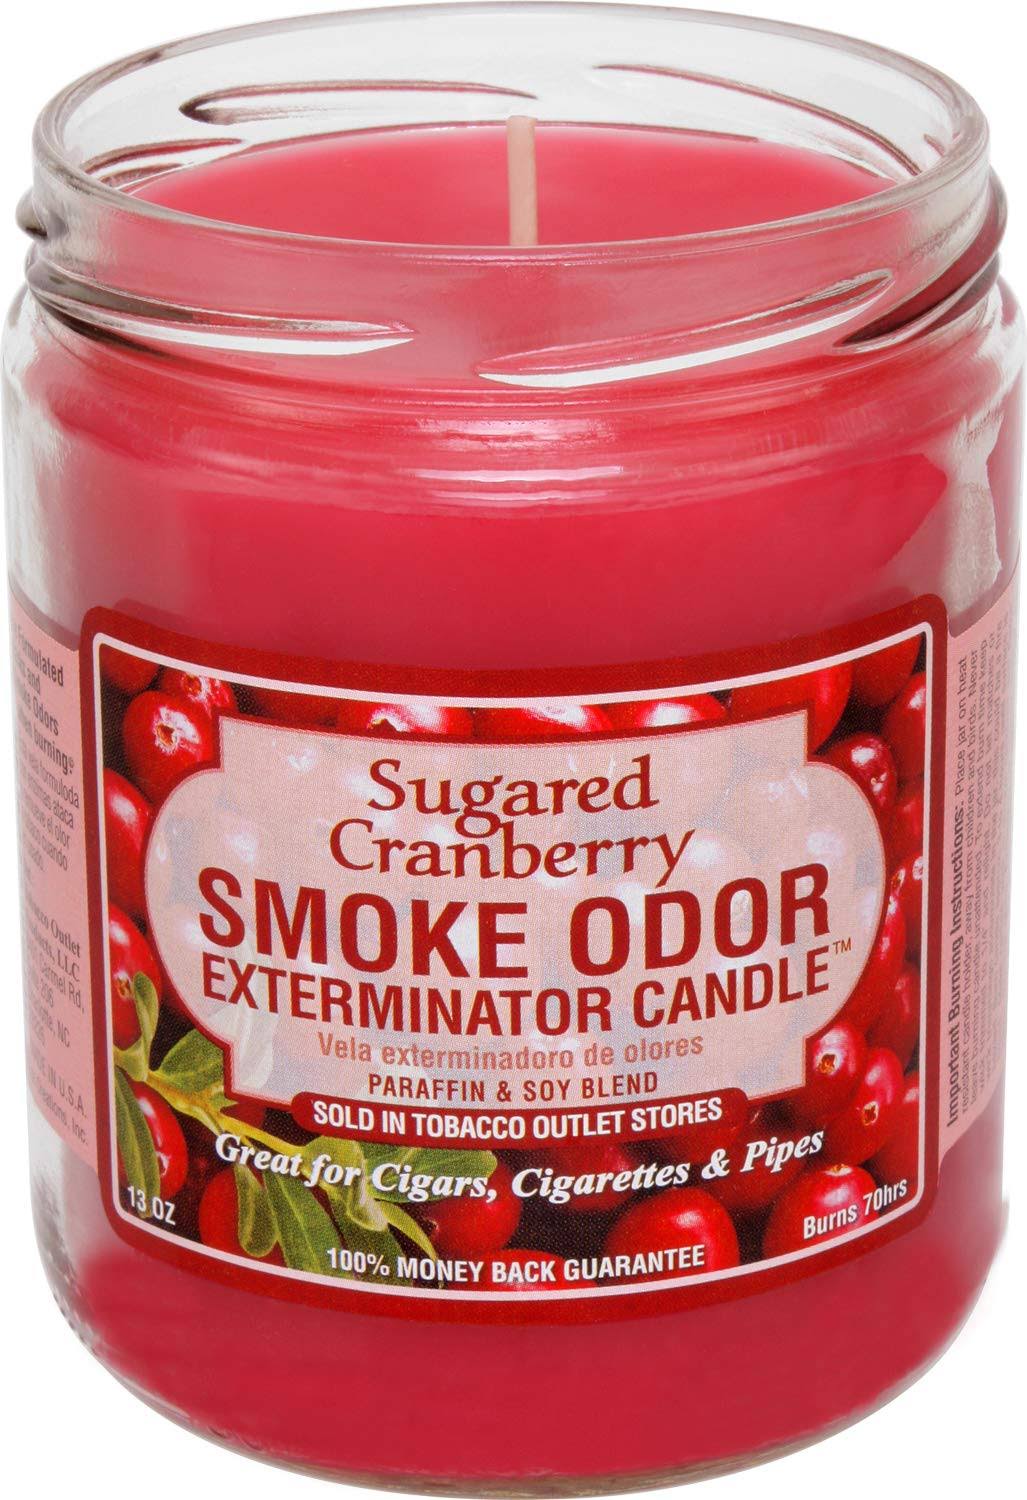 Smoke Odor Exterminator, Sugared Cranberry Candle, 13 oz